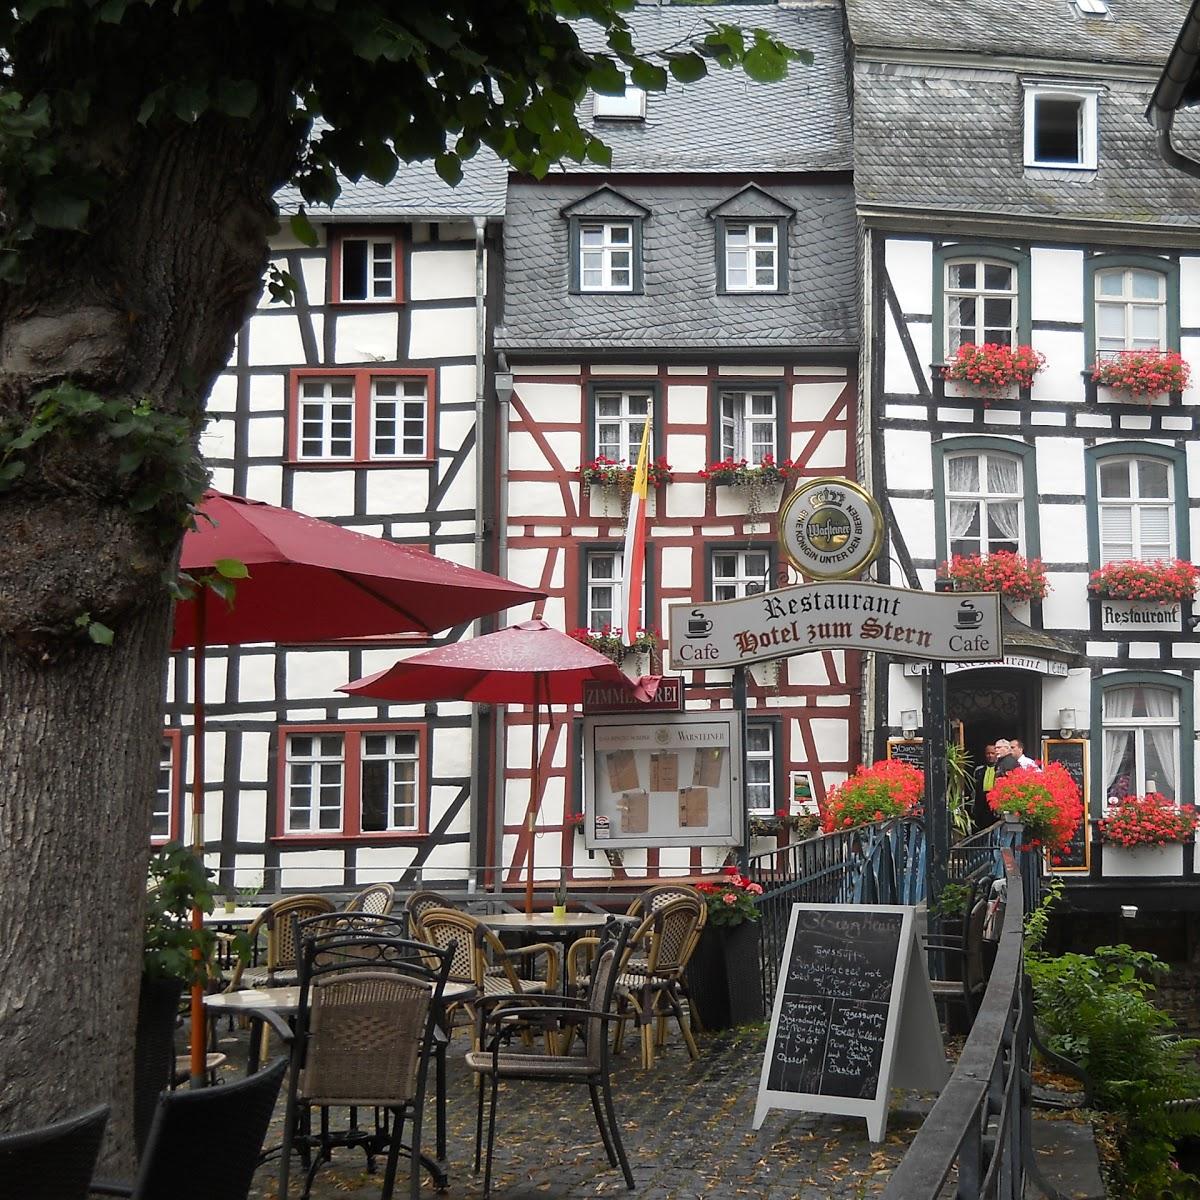 Restaurant "Hotel Zum Stern" in Monschau